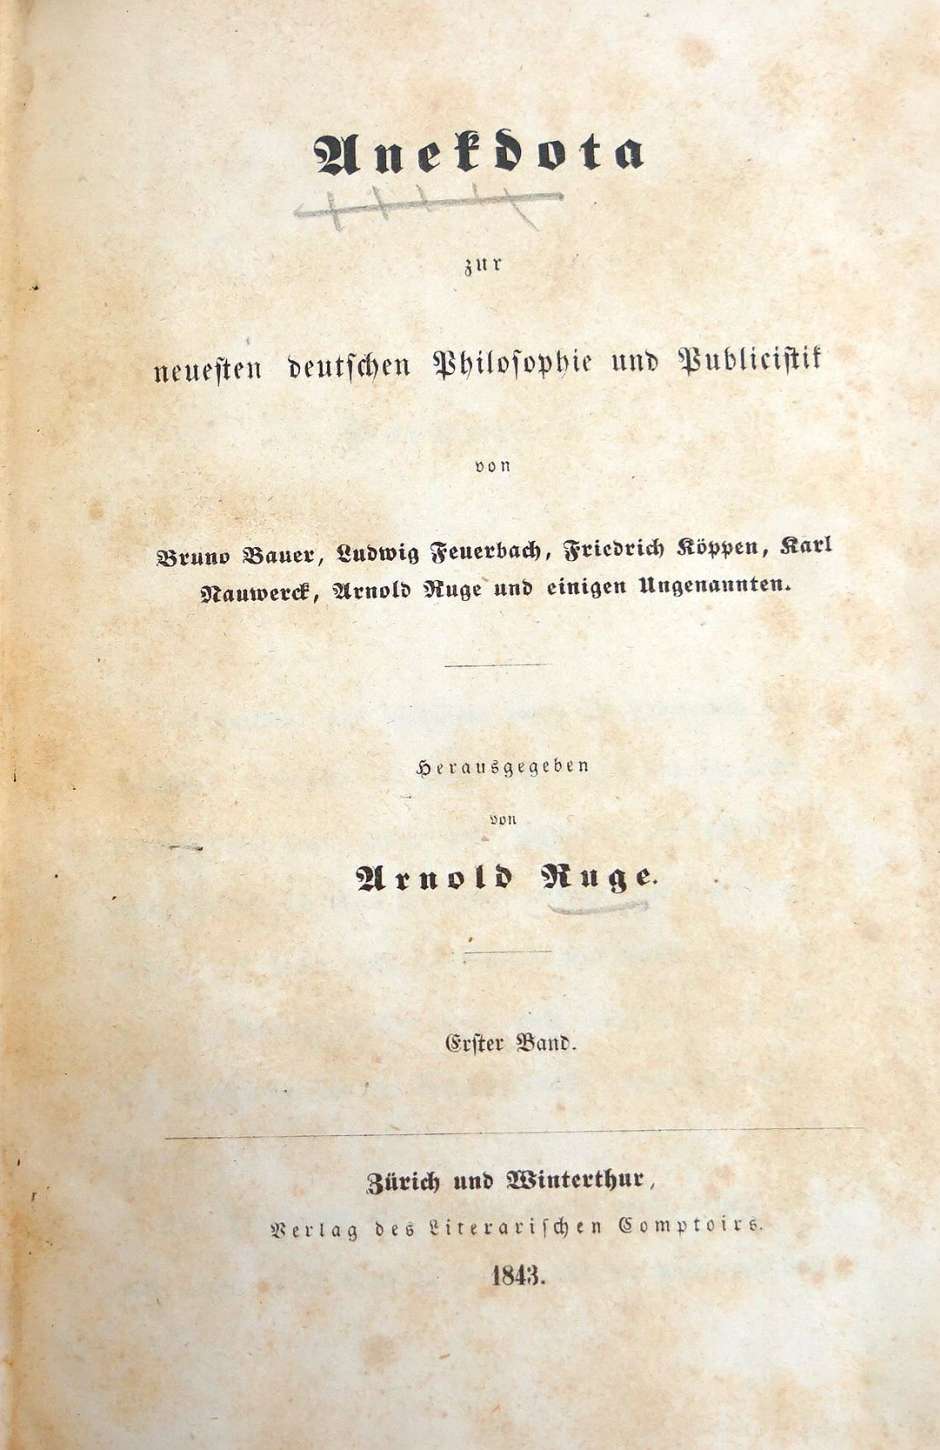 Lot 2147, Auction  115, Ruge, Arnold, Anekdota zur neuesten deutschen Philosophie und Publicistik